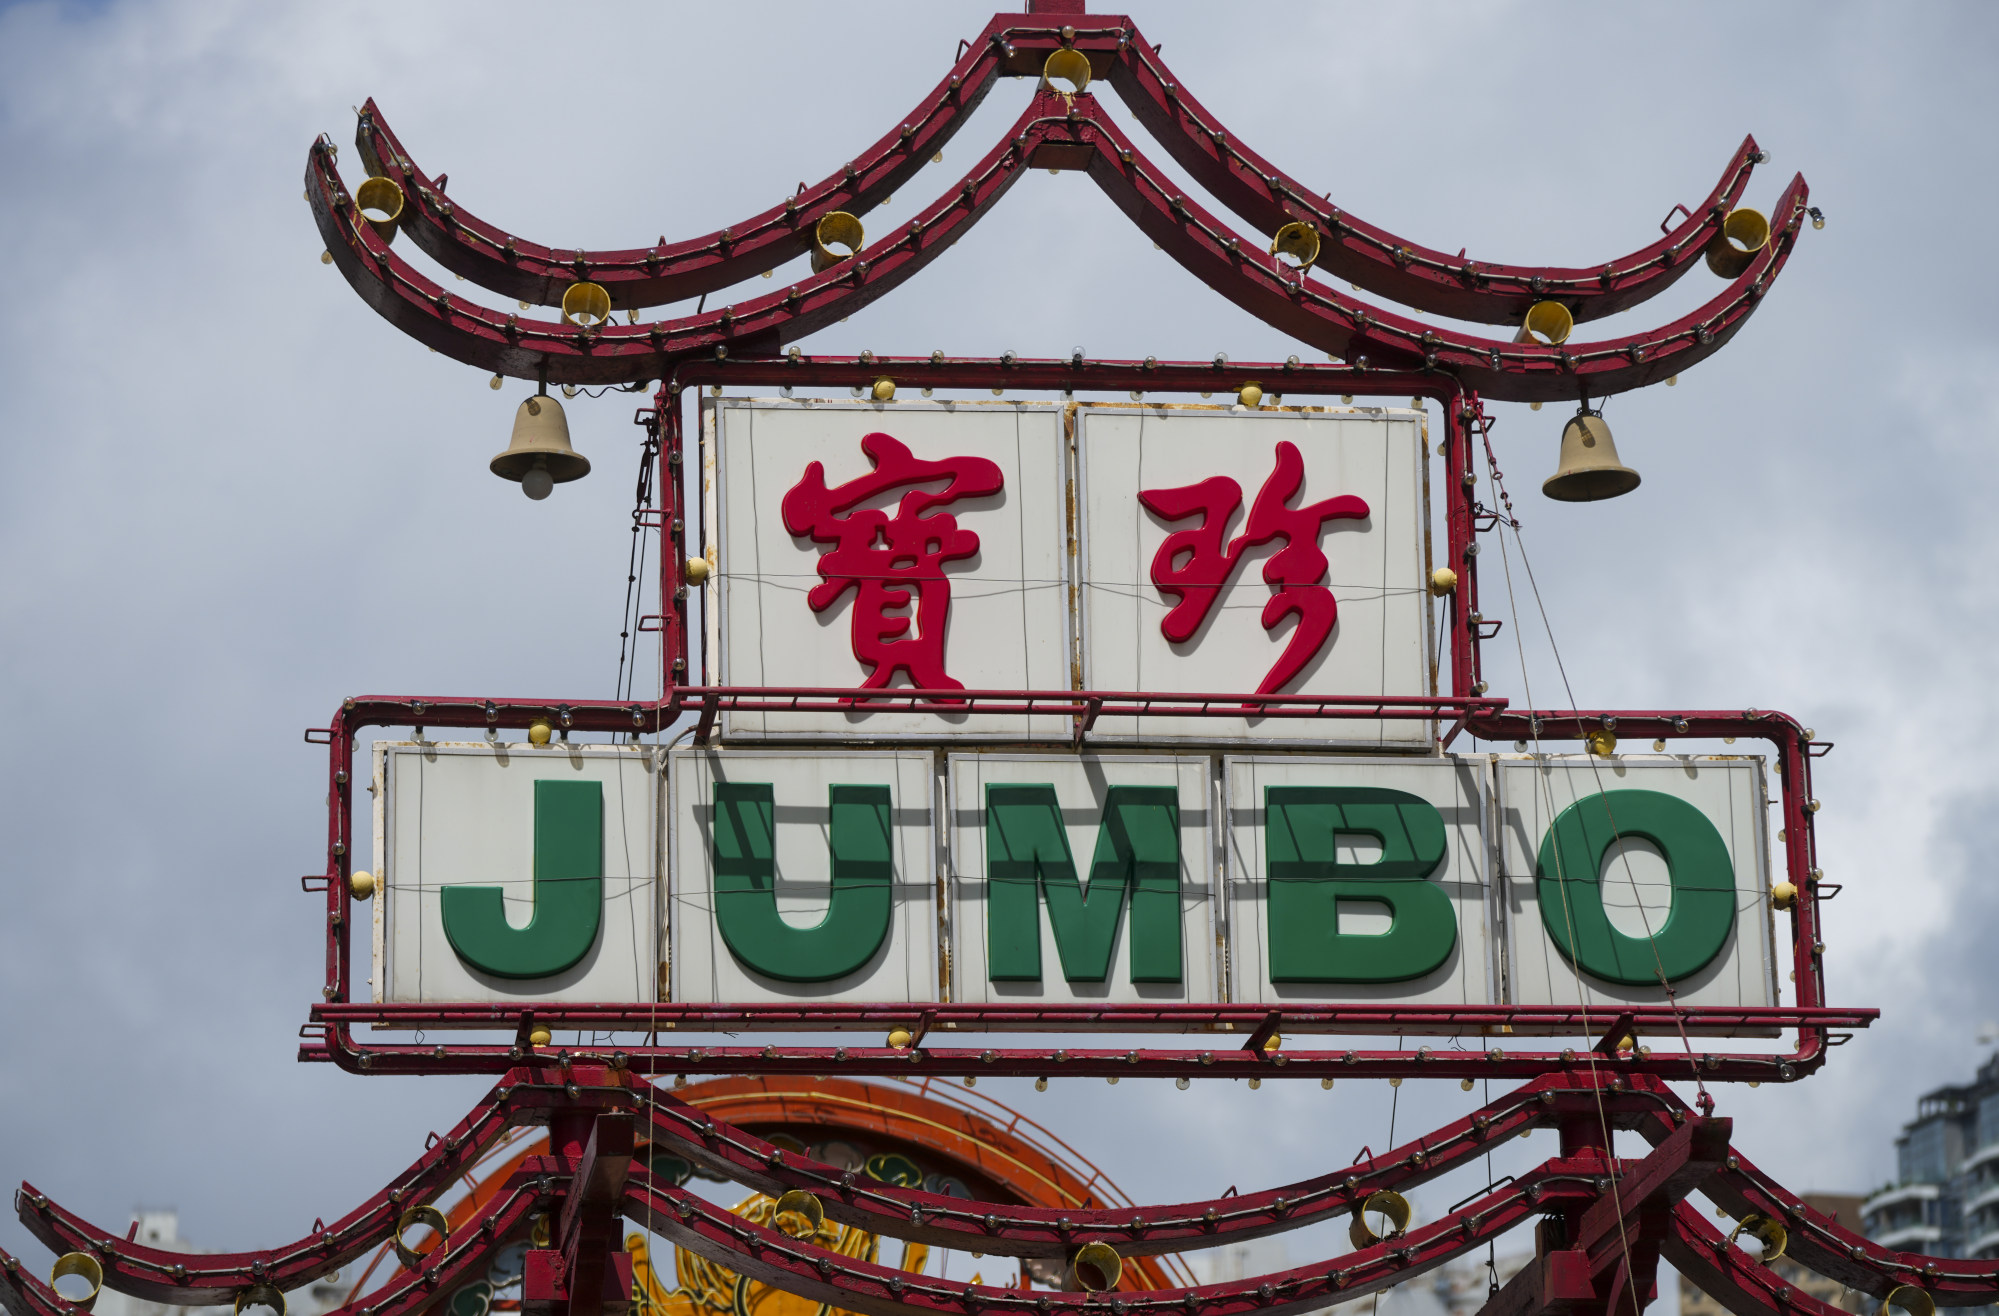 Jumbo Floating Restaurant’s sign at Aberdeen on June 1. Photo: Sam Tsang